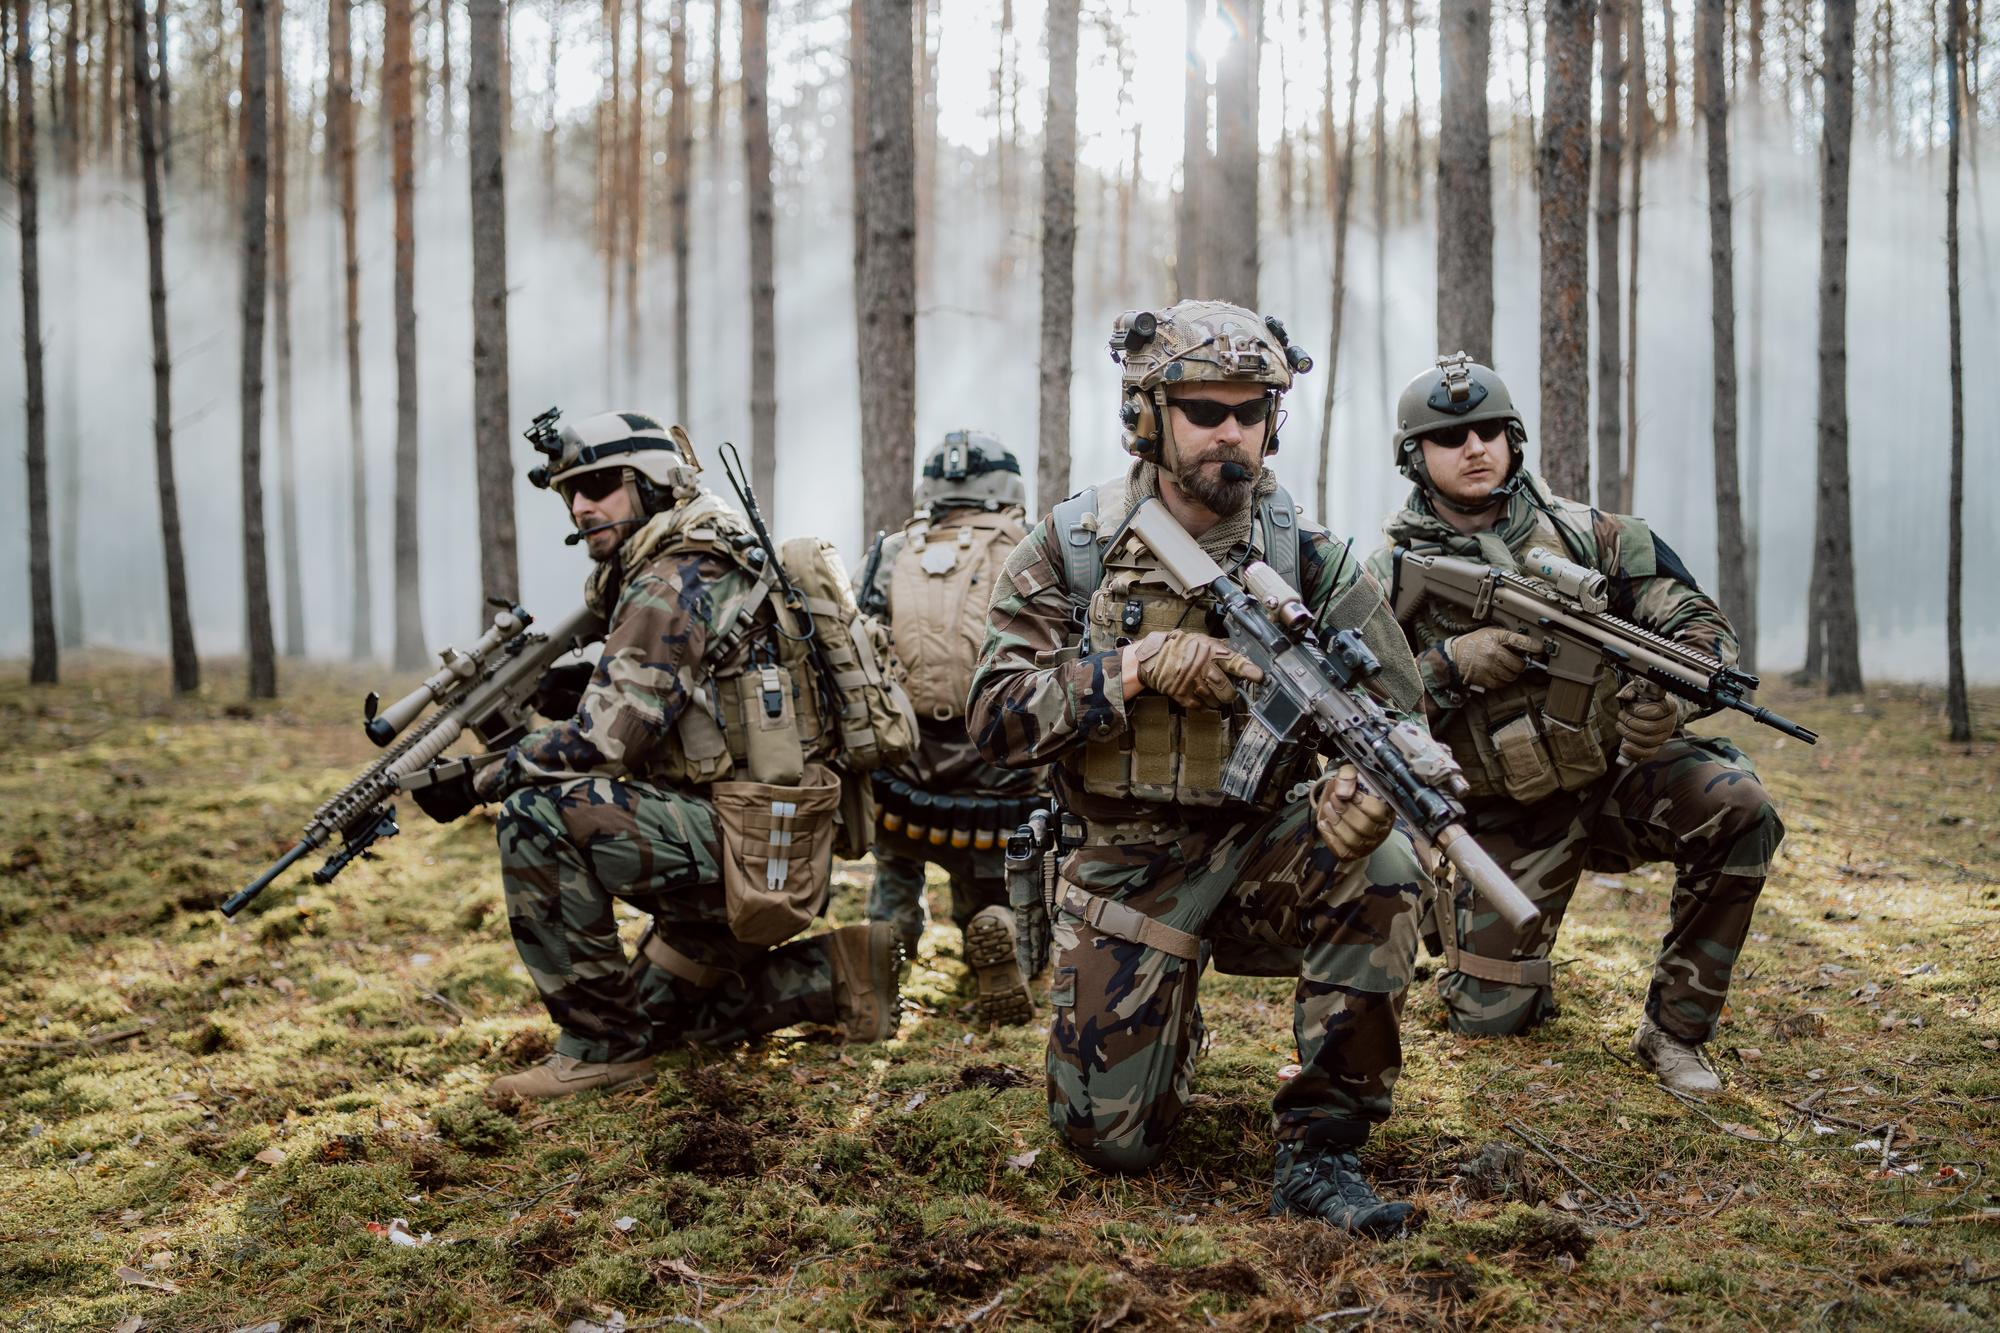 cuatro-soldados-mediana-edad-completamente-equipados-uniformes-camuflaje-forman-linea-lista-disparar-objetivo